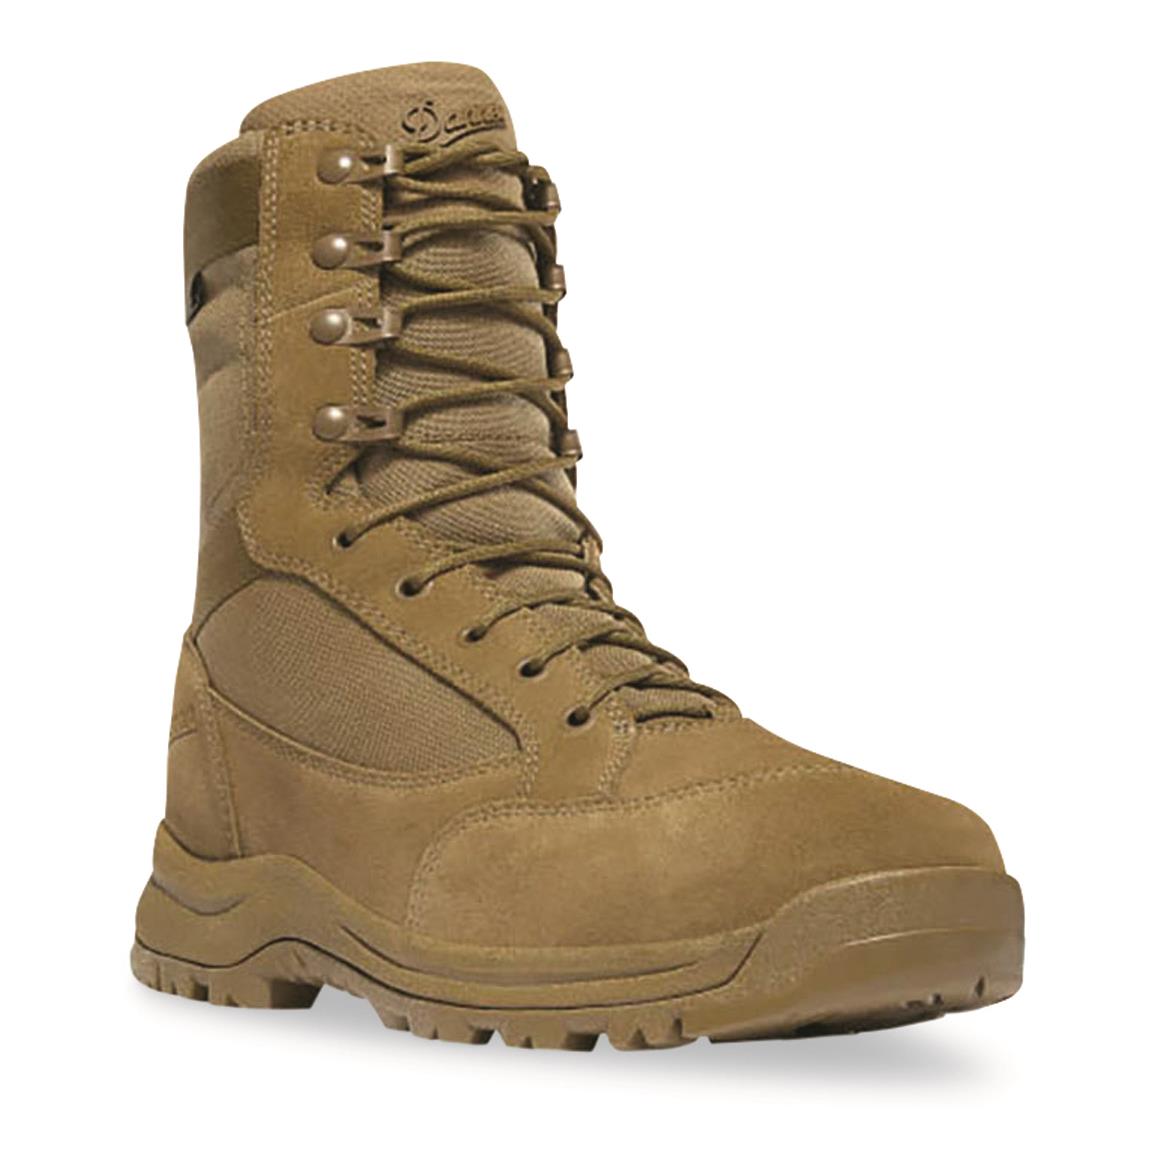 Danner Men's Tanicus 8" Side-Zip Composite Toe Tactical Boots, Coyote